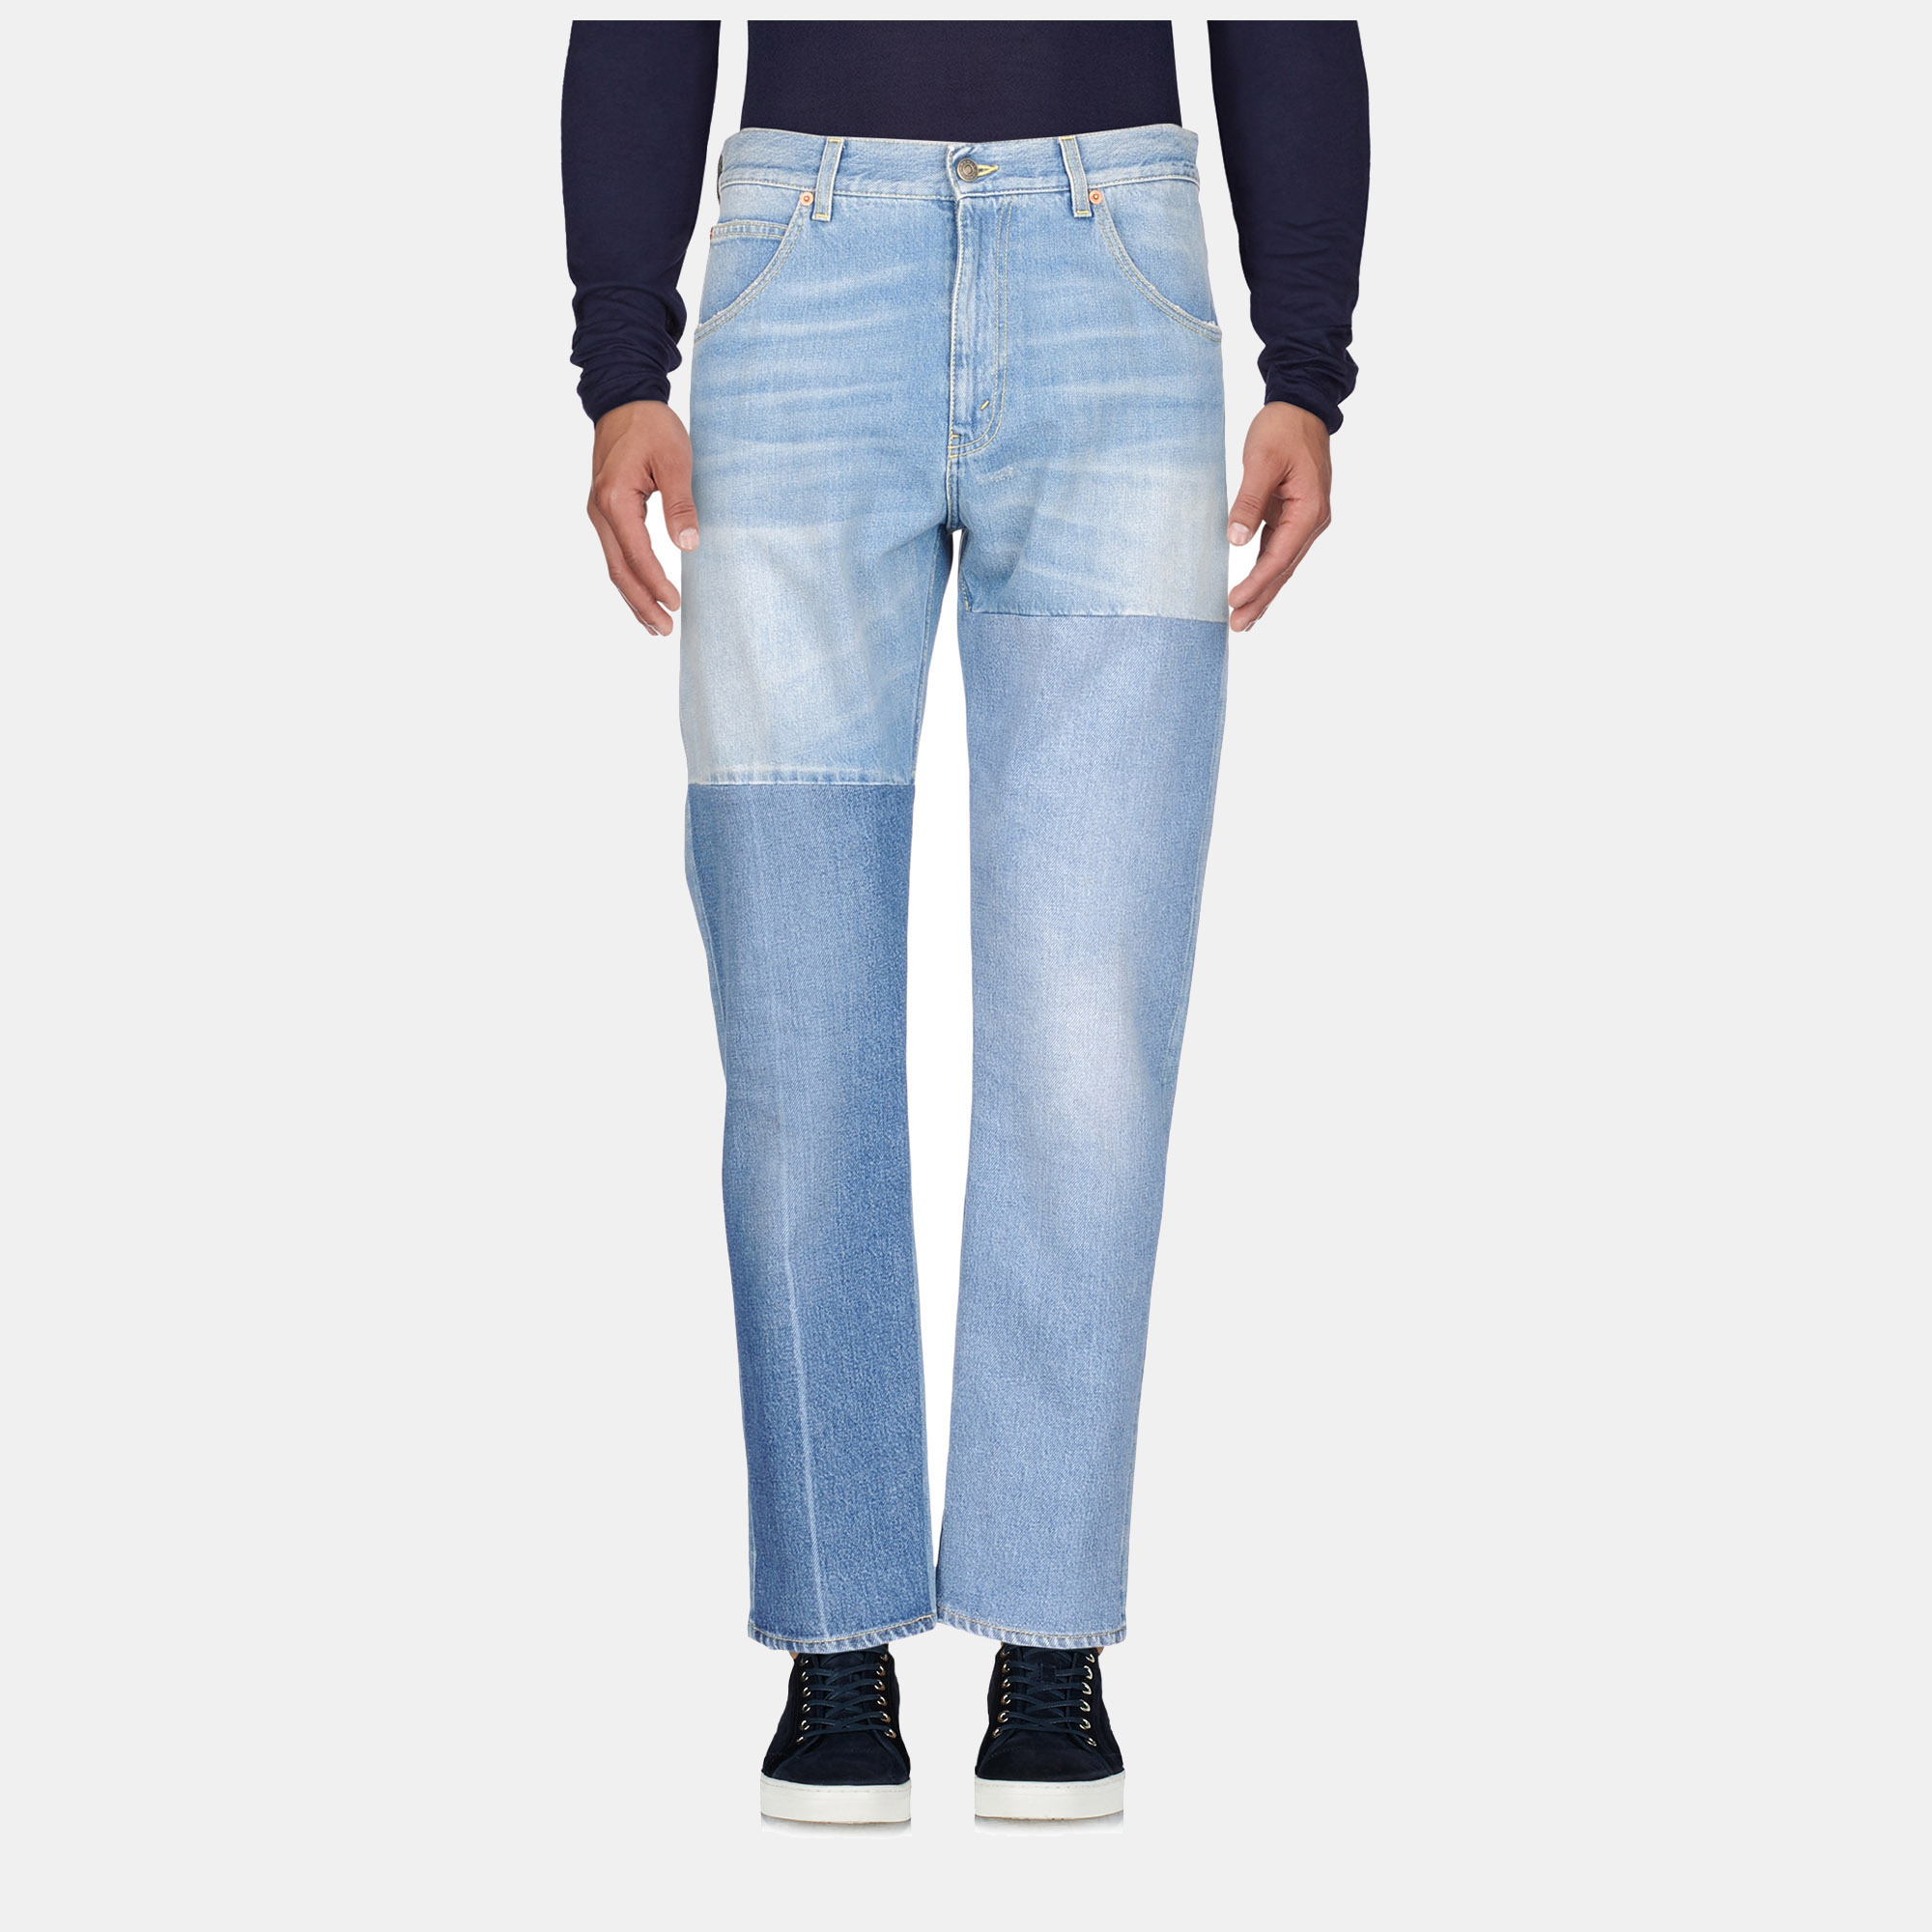 Gucci cotton jeans 34